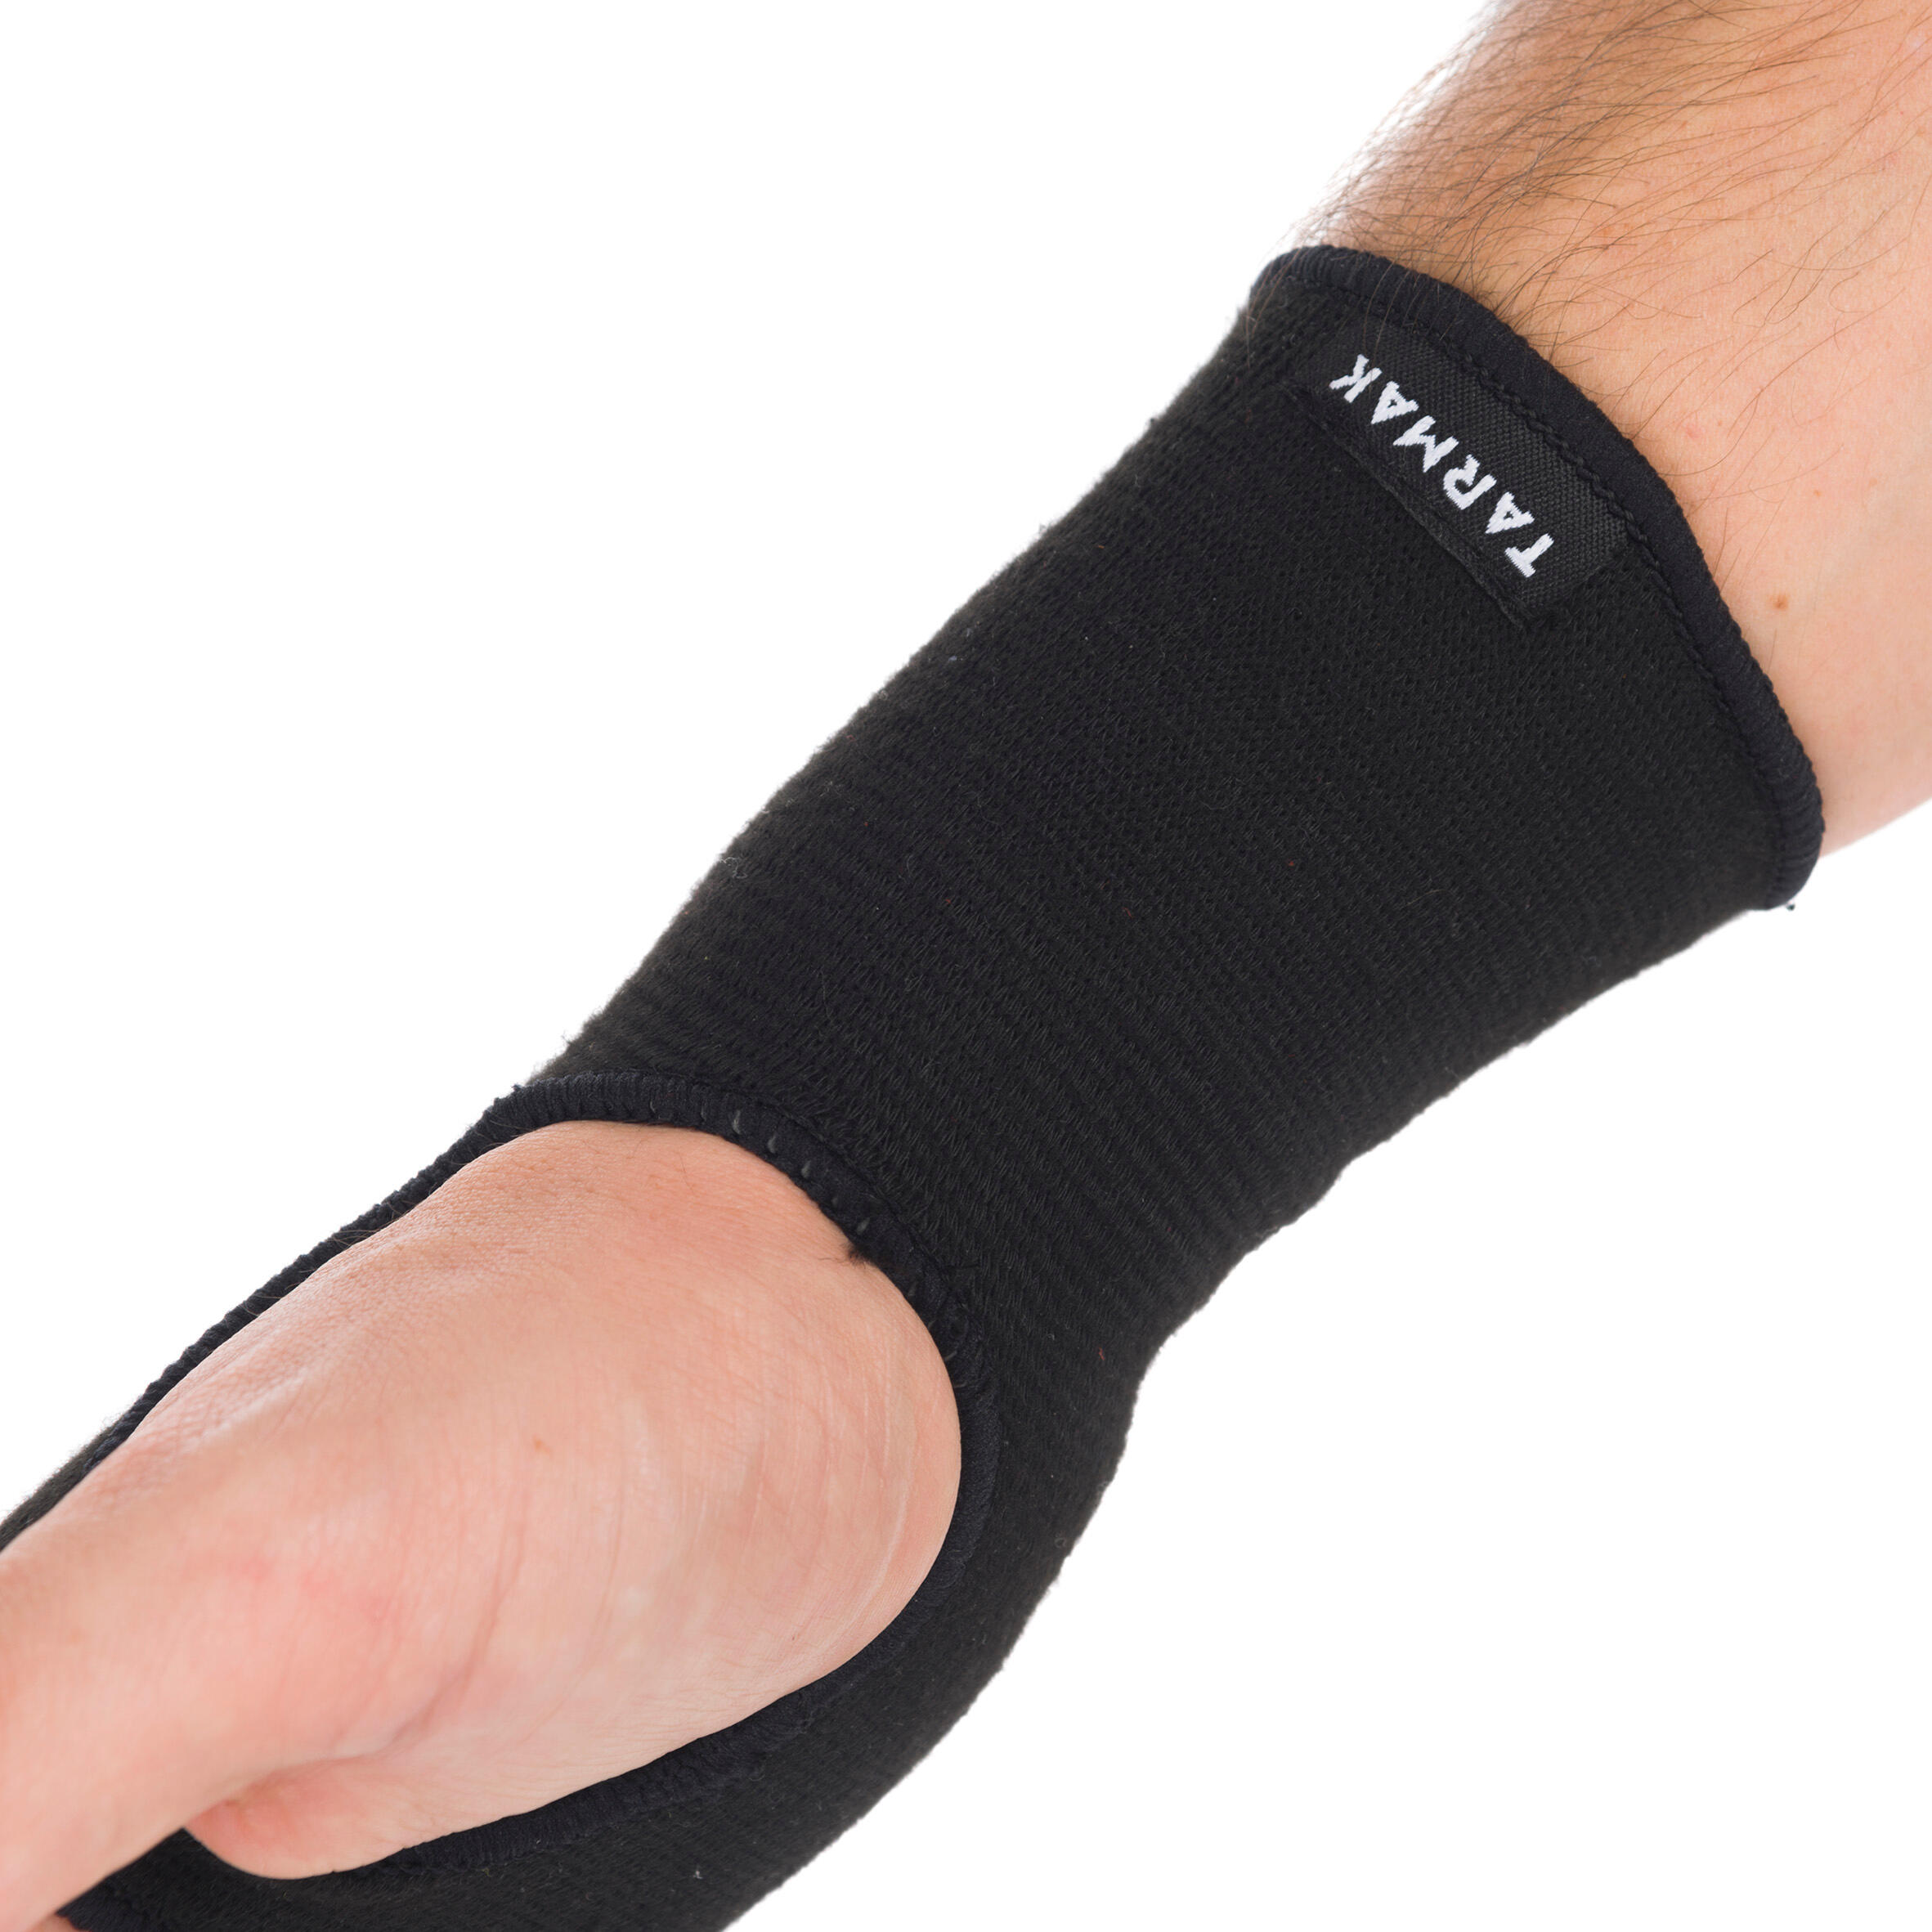 tarmak wrist support